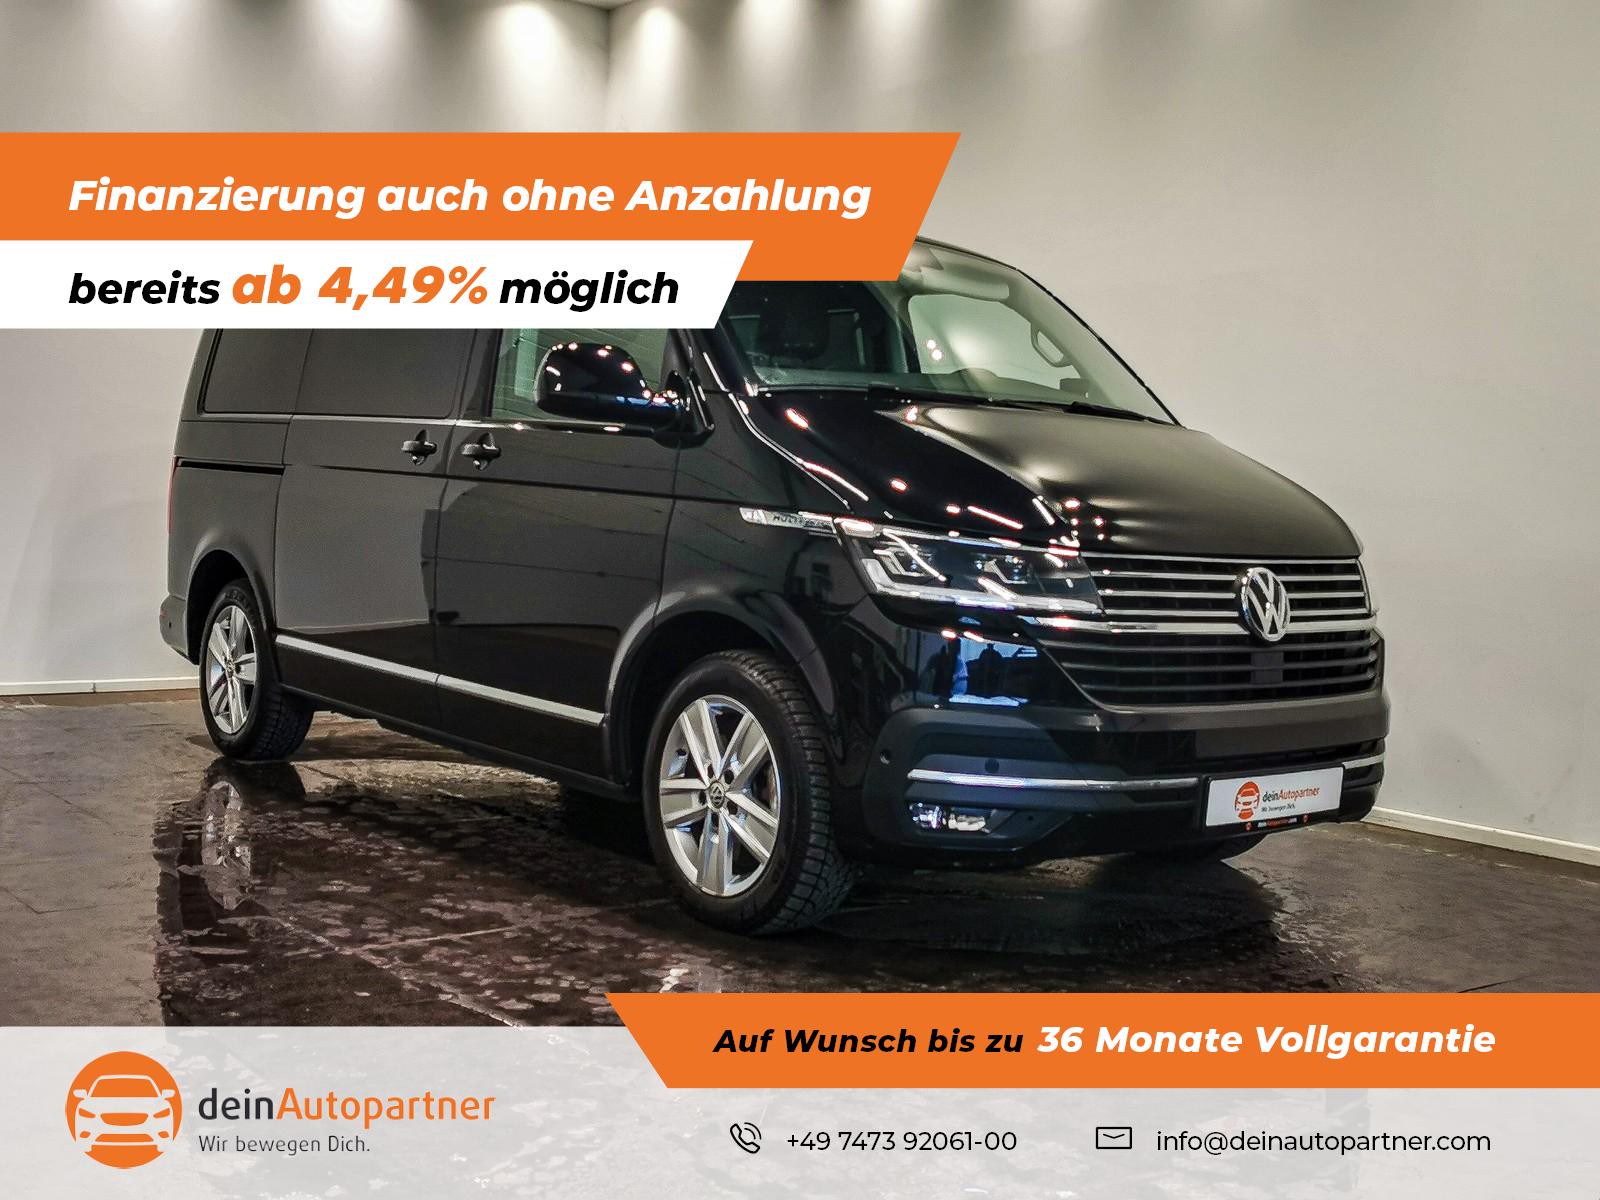 Volkswagen T6.1 Multivan gebraucht kaufen in Mössingen Preis 53900 eur -  Int.Nr.: 1298 VERKAUFT